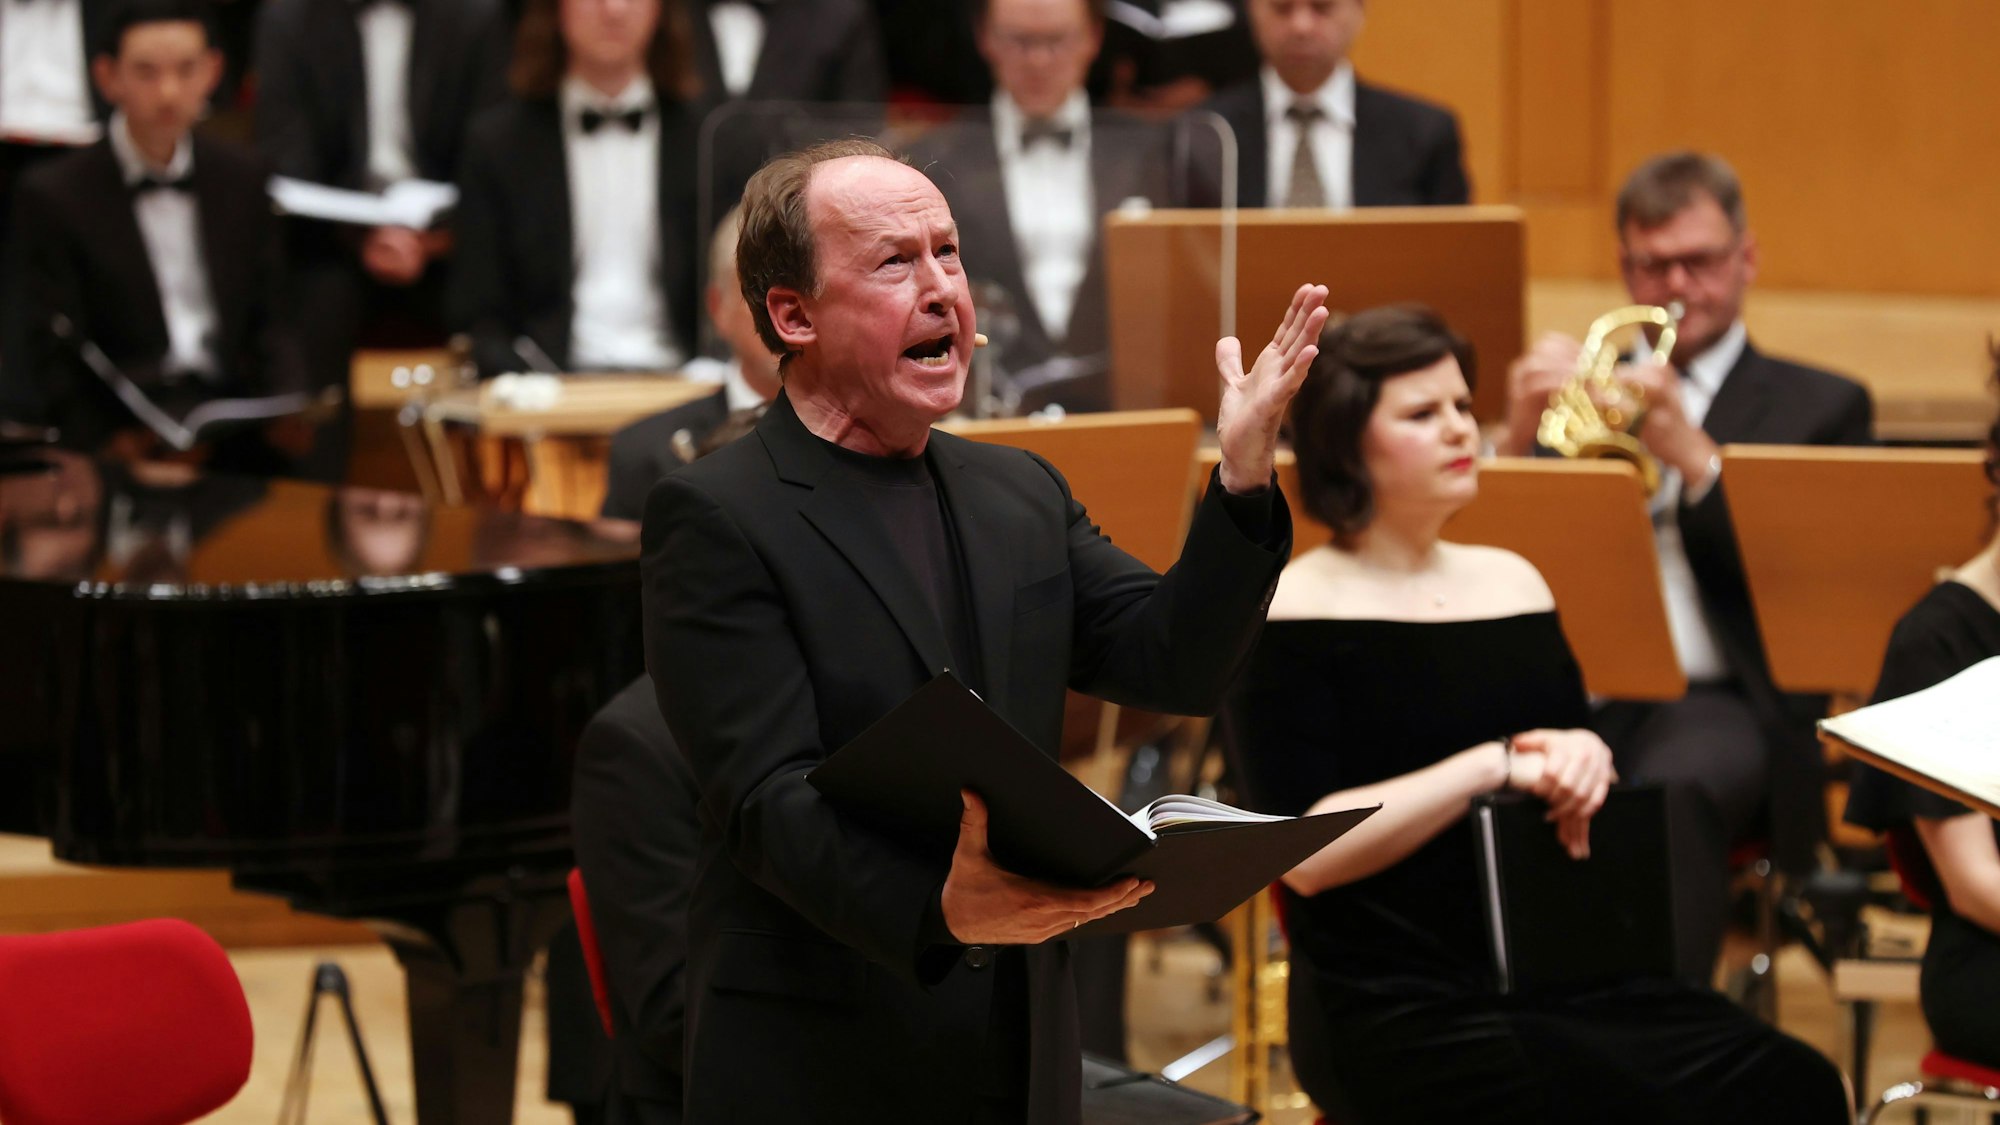 Ulrich Noethen hält eine offene Mappe in der rechten und gestikuliert mit der linken Hand. Er trägt einen schwarzen Anzug. Im Hintergrund das Orchester.